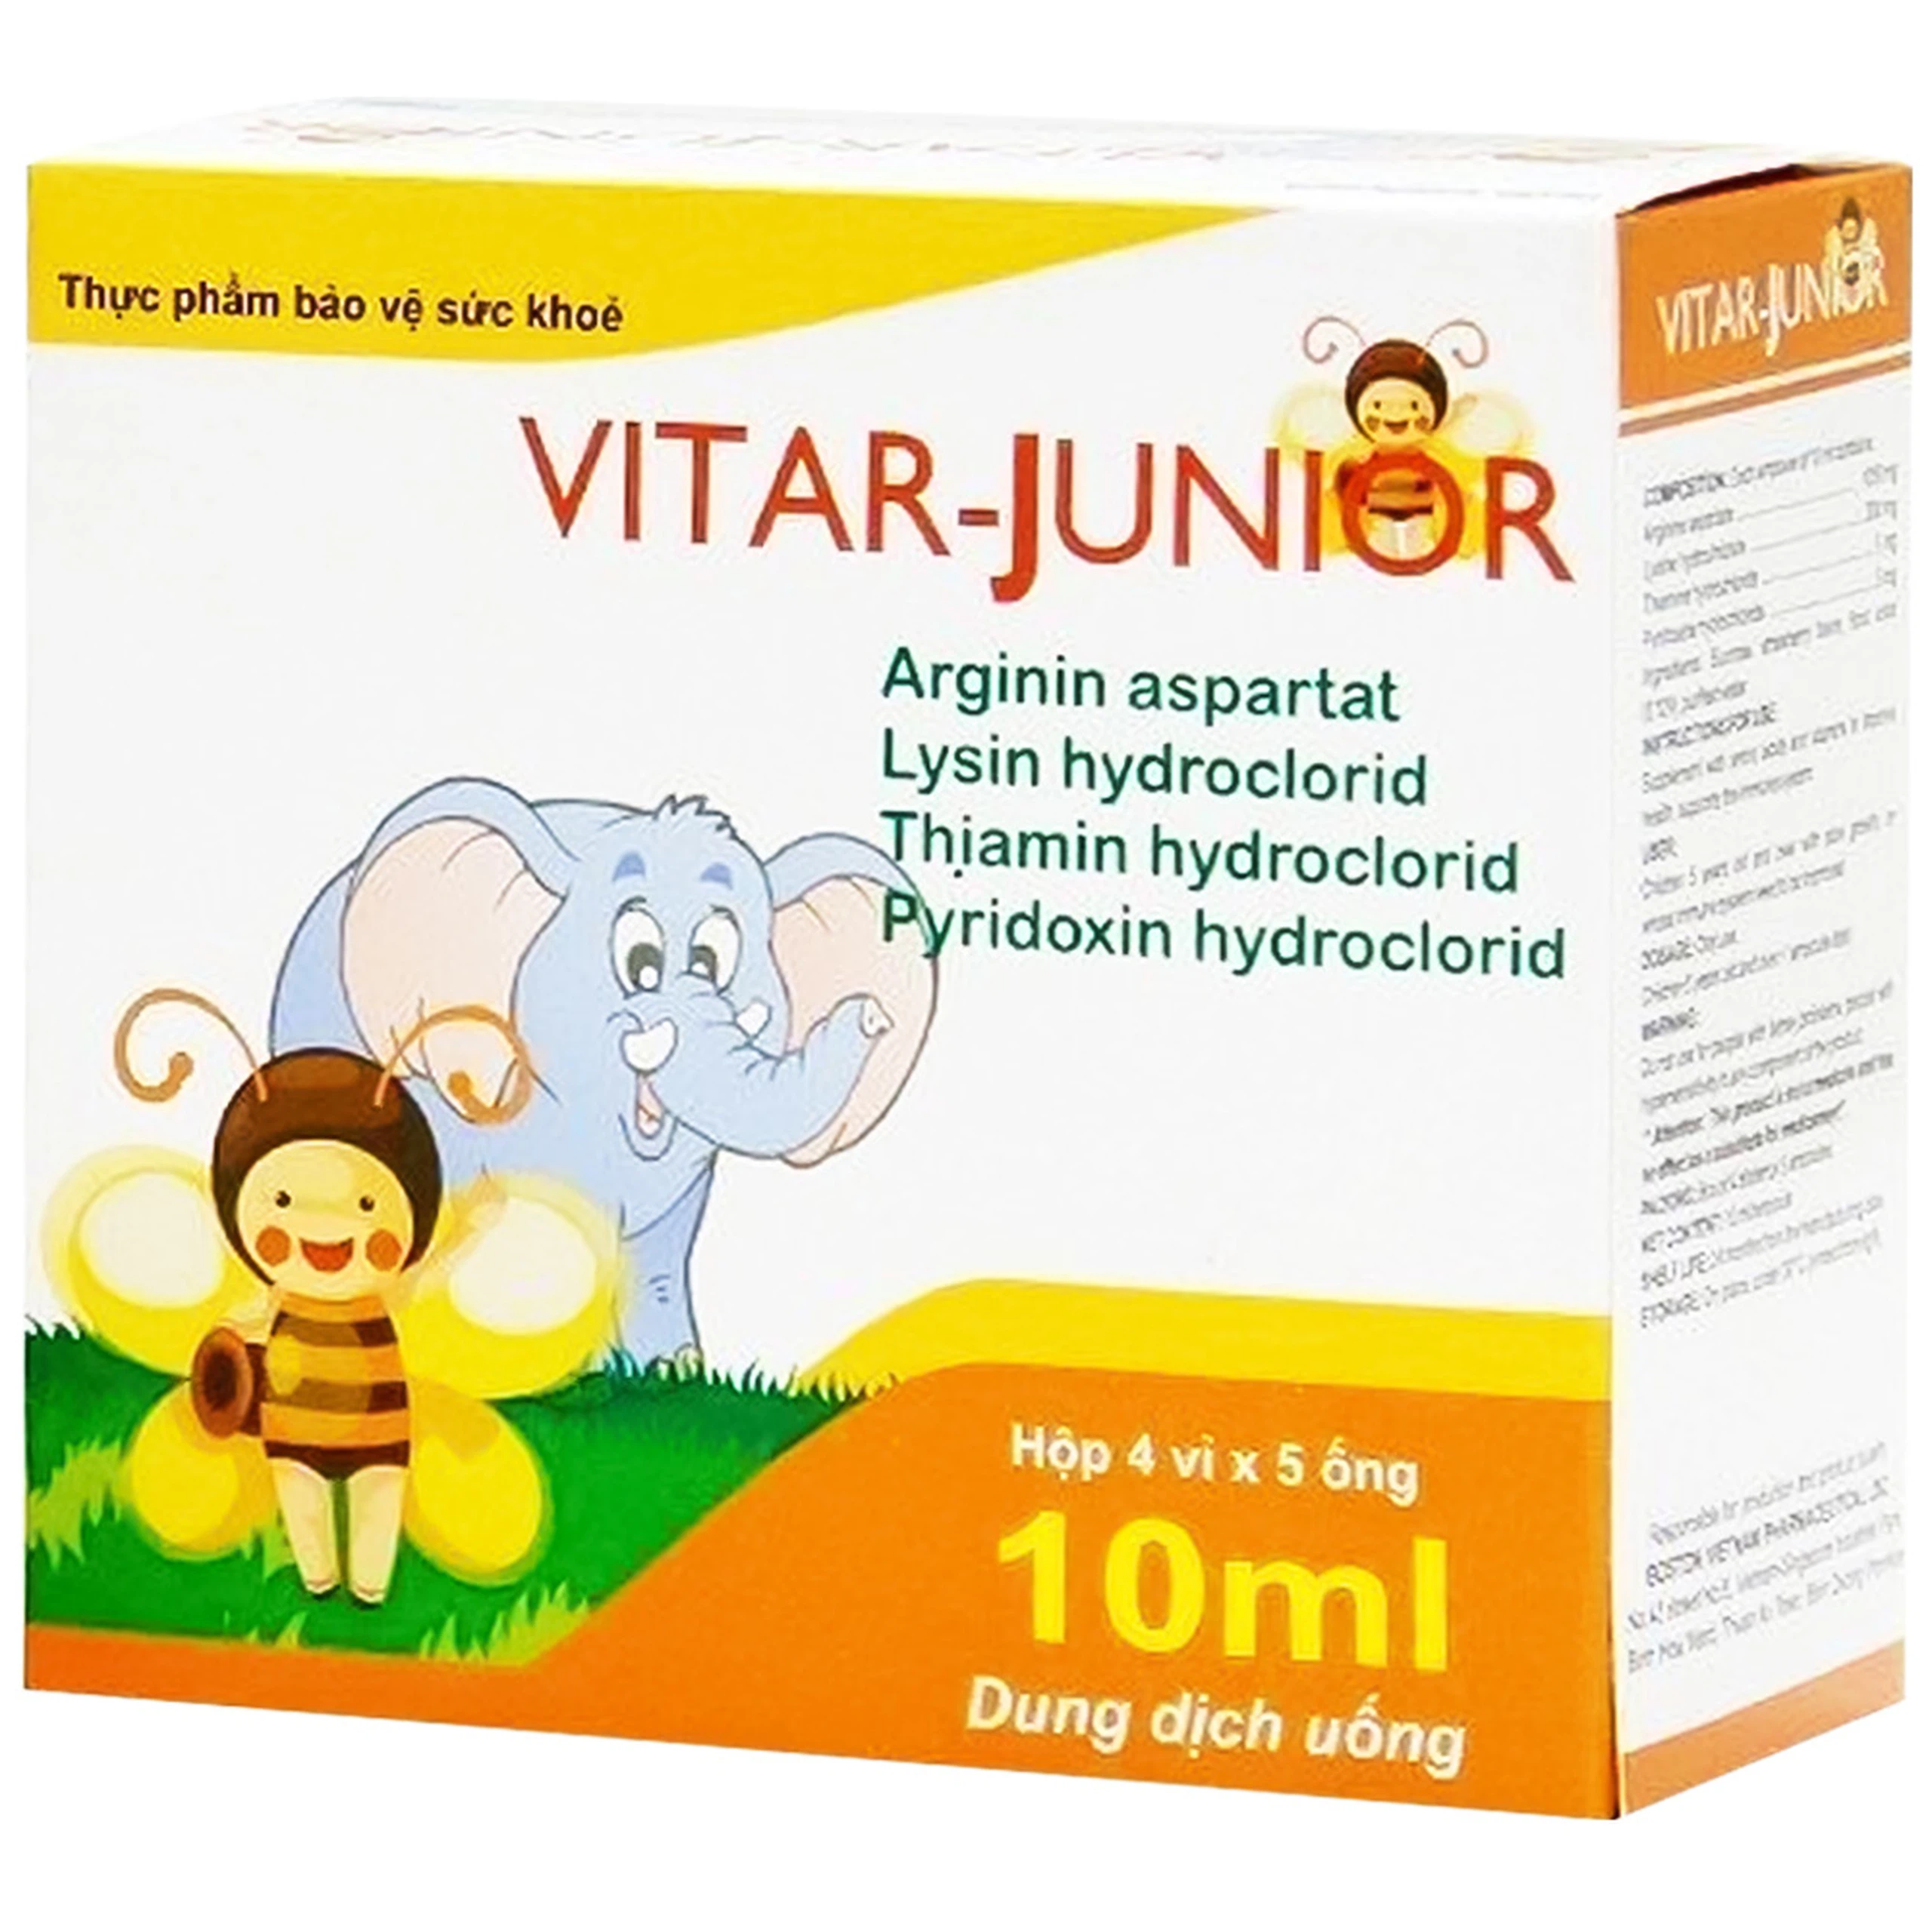 Dung dịch uống Vitar-Junior Boston bổ sung Acid Amin và Vitamin cho cơ thể (4 vỉ x 5 ống x 10 ml)